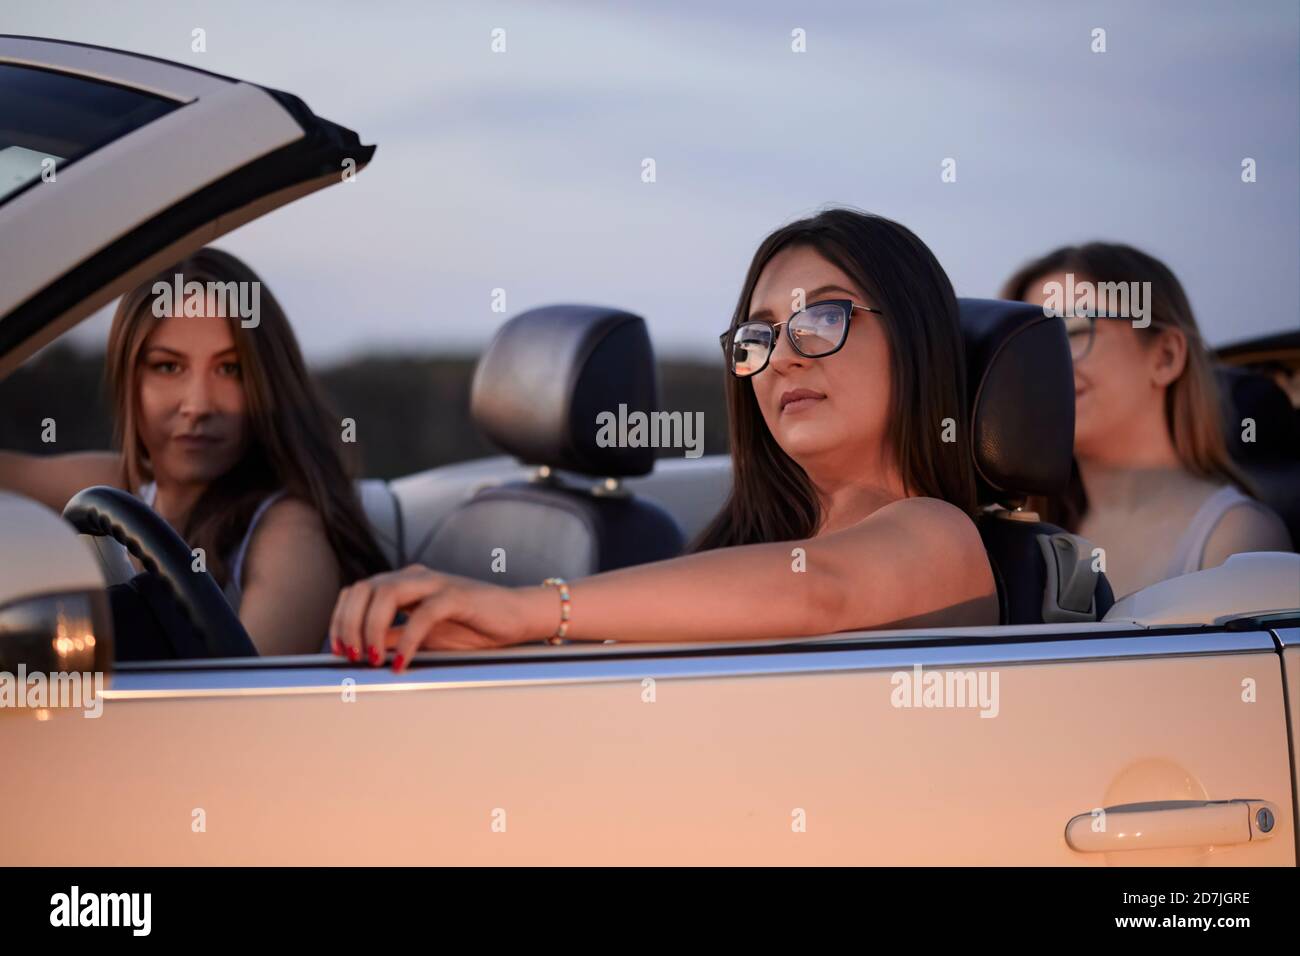 Des amies de sexe féminin assis dans un présentoir convertible contre le ciel à la tombée de la nuit Banque D'Images